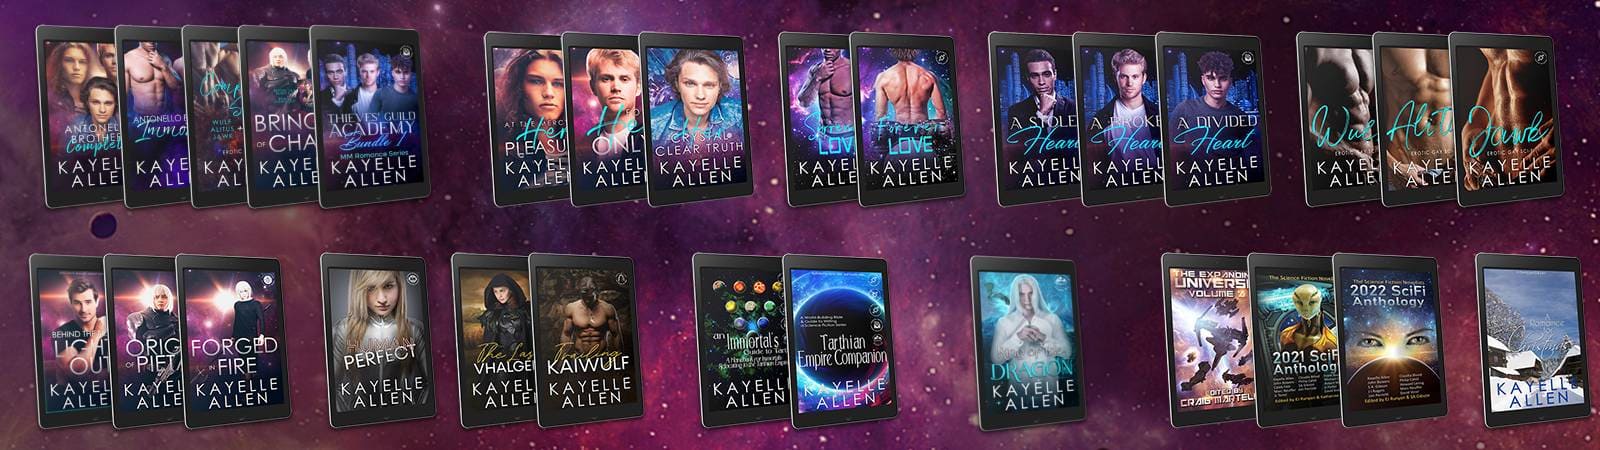 Books by Science Fiction Romance author Kayelle Allen #SciFi #Romance